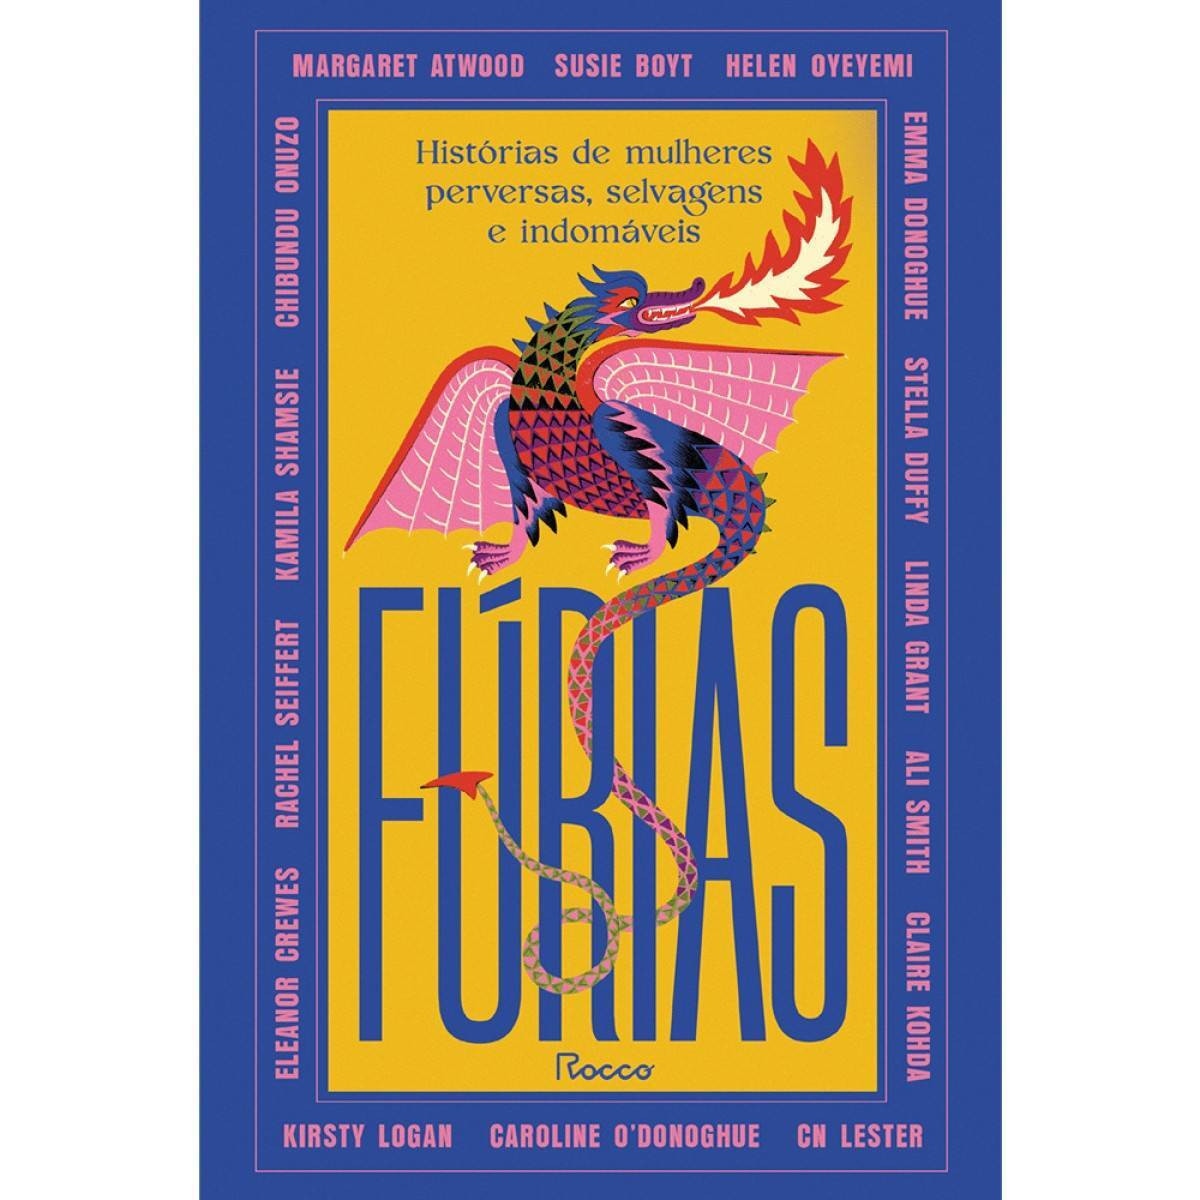 Fúrias — Histórias de mulheres perversas, selvagens e indomáveis Tradução: Thaís Britto. Rocco, 320 páginas. R$ 79,90